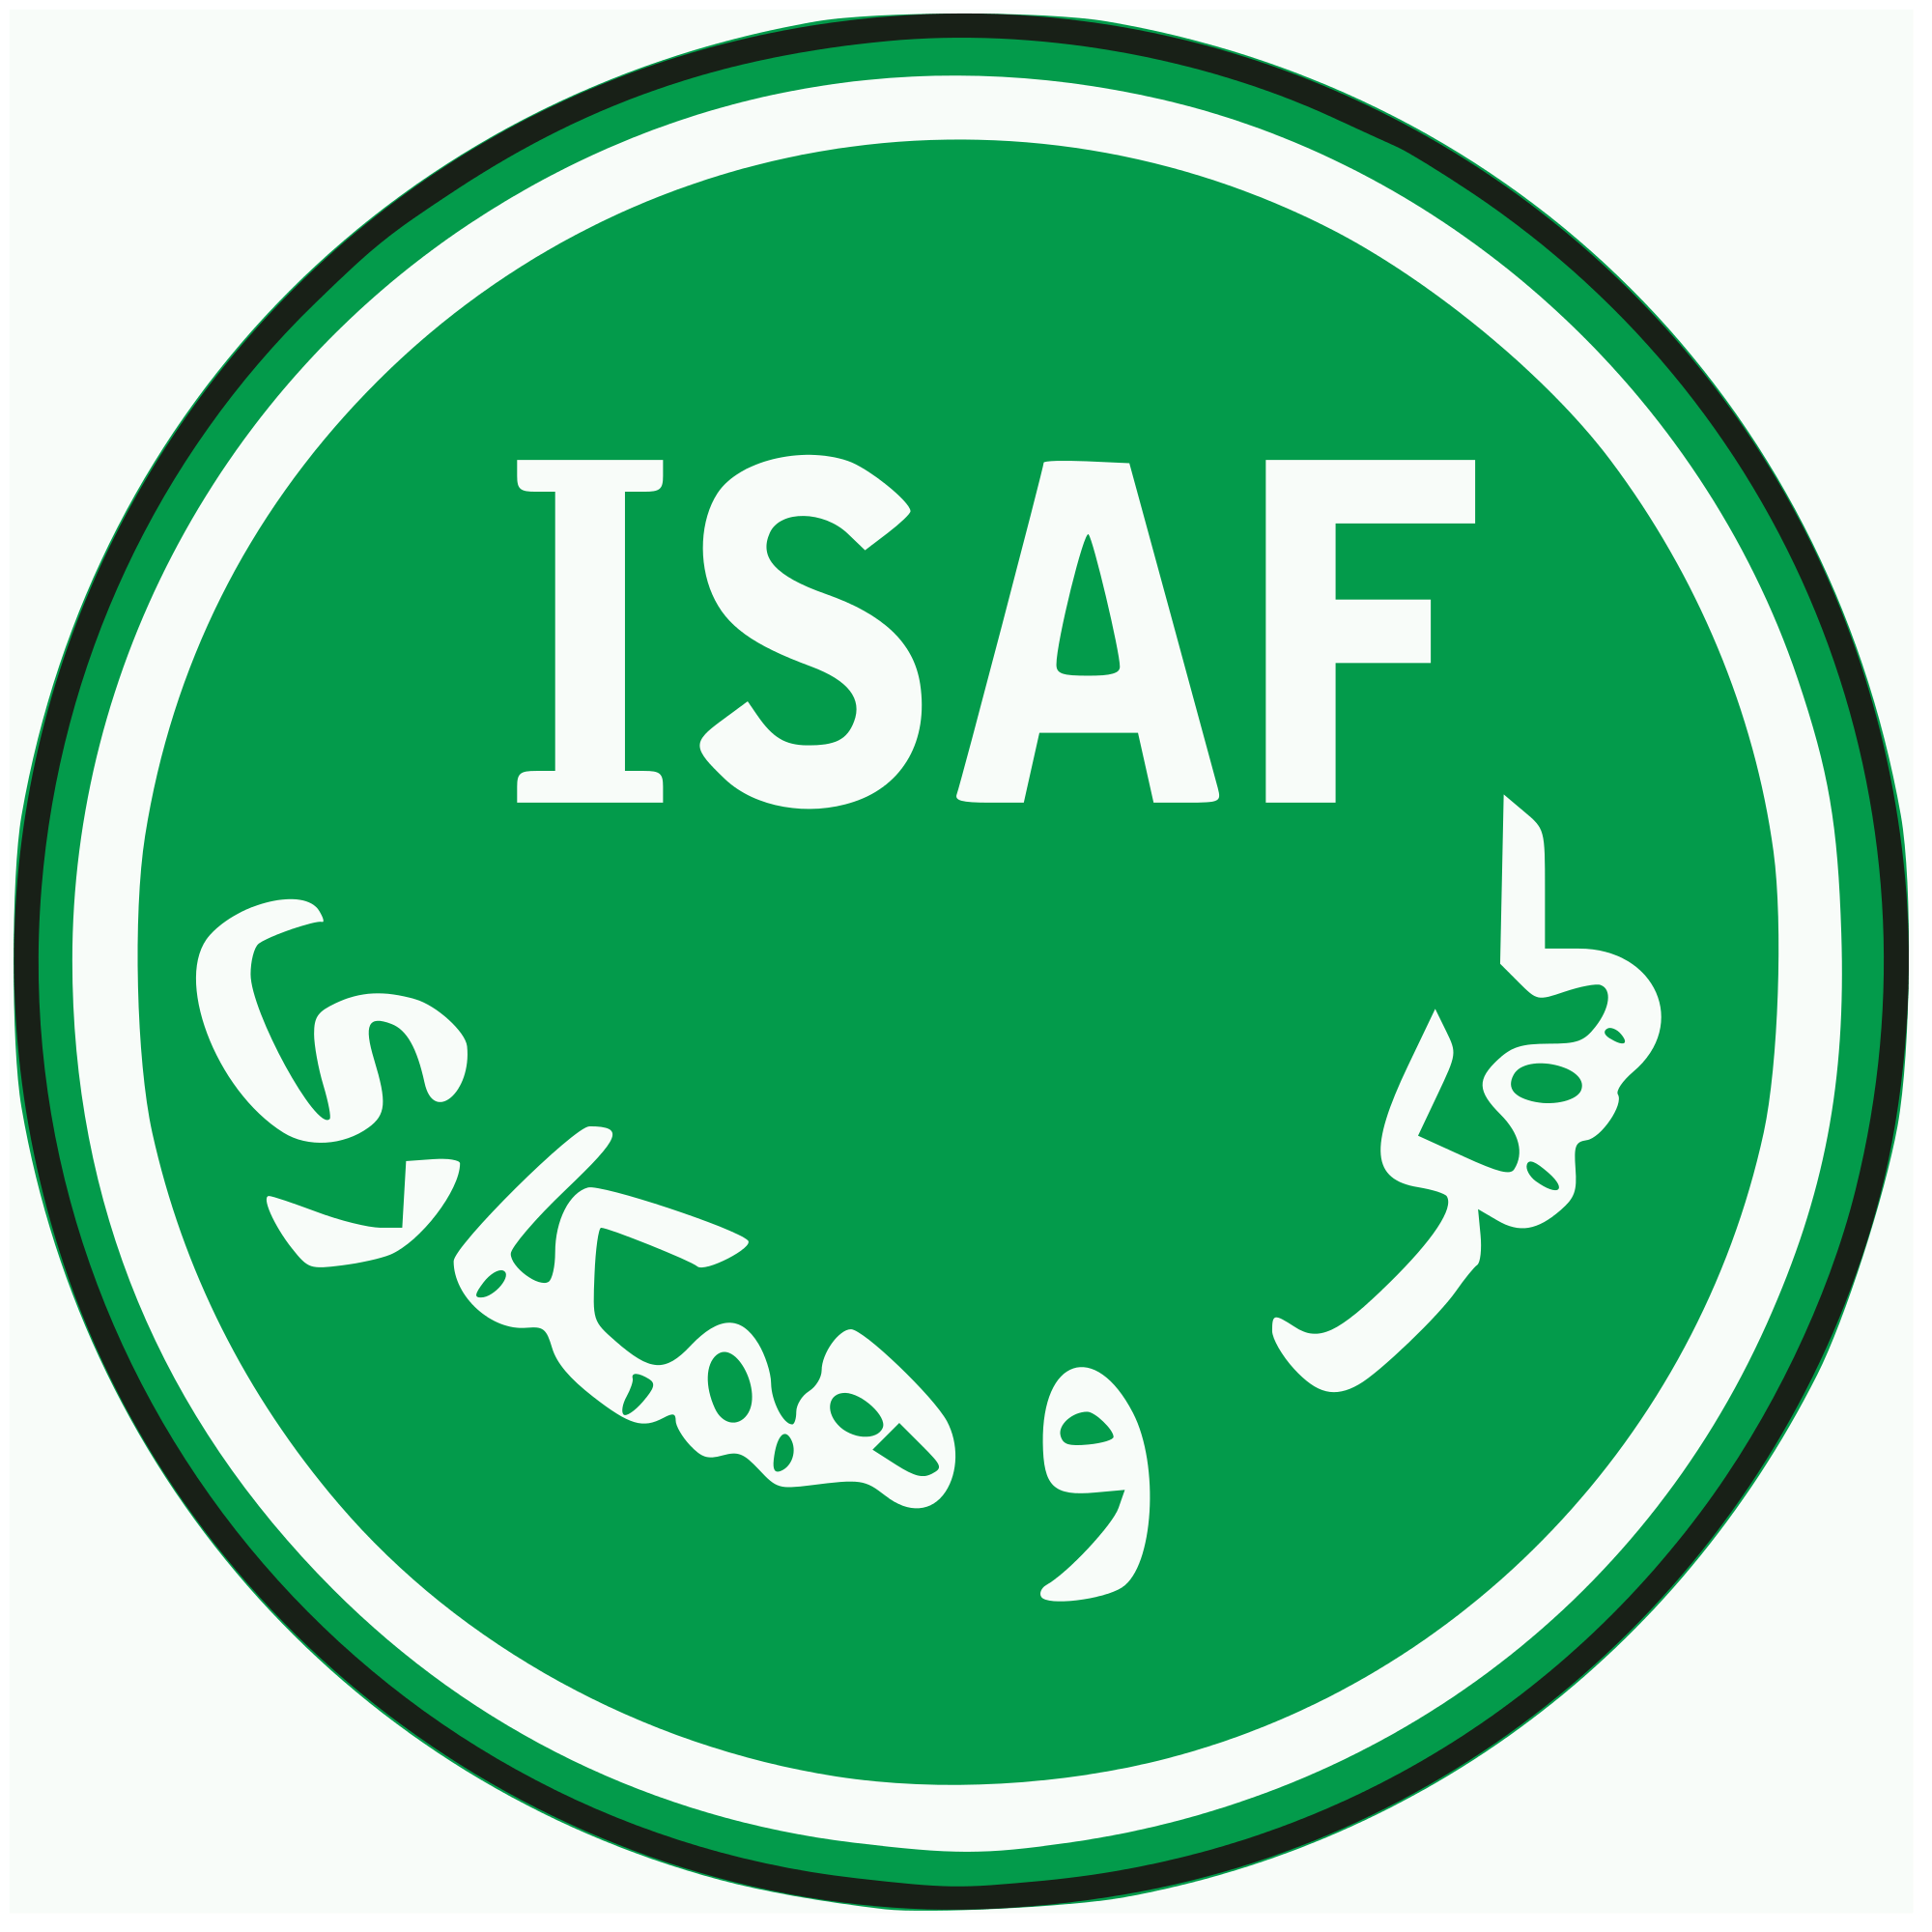 ISAF Logo - File:Isaf-logo.svg - Wikimedia Commons